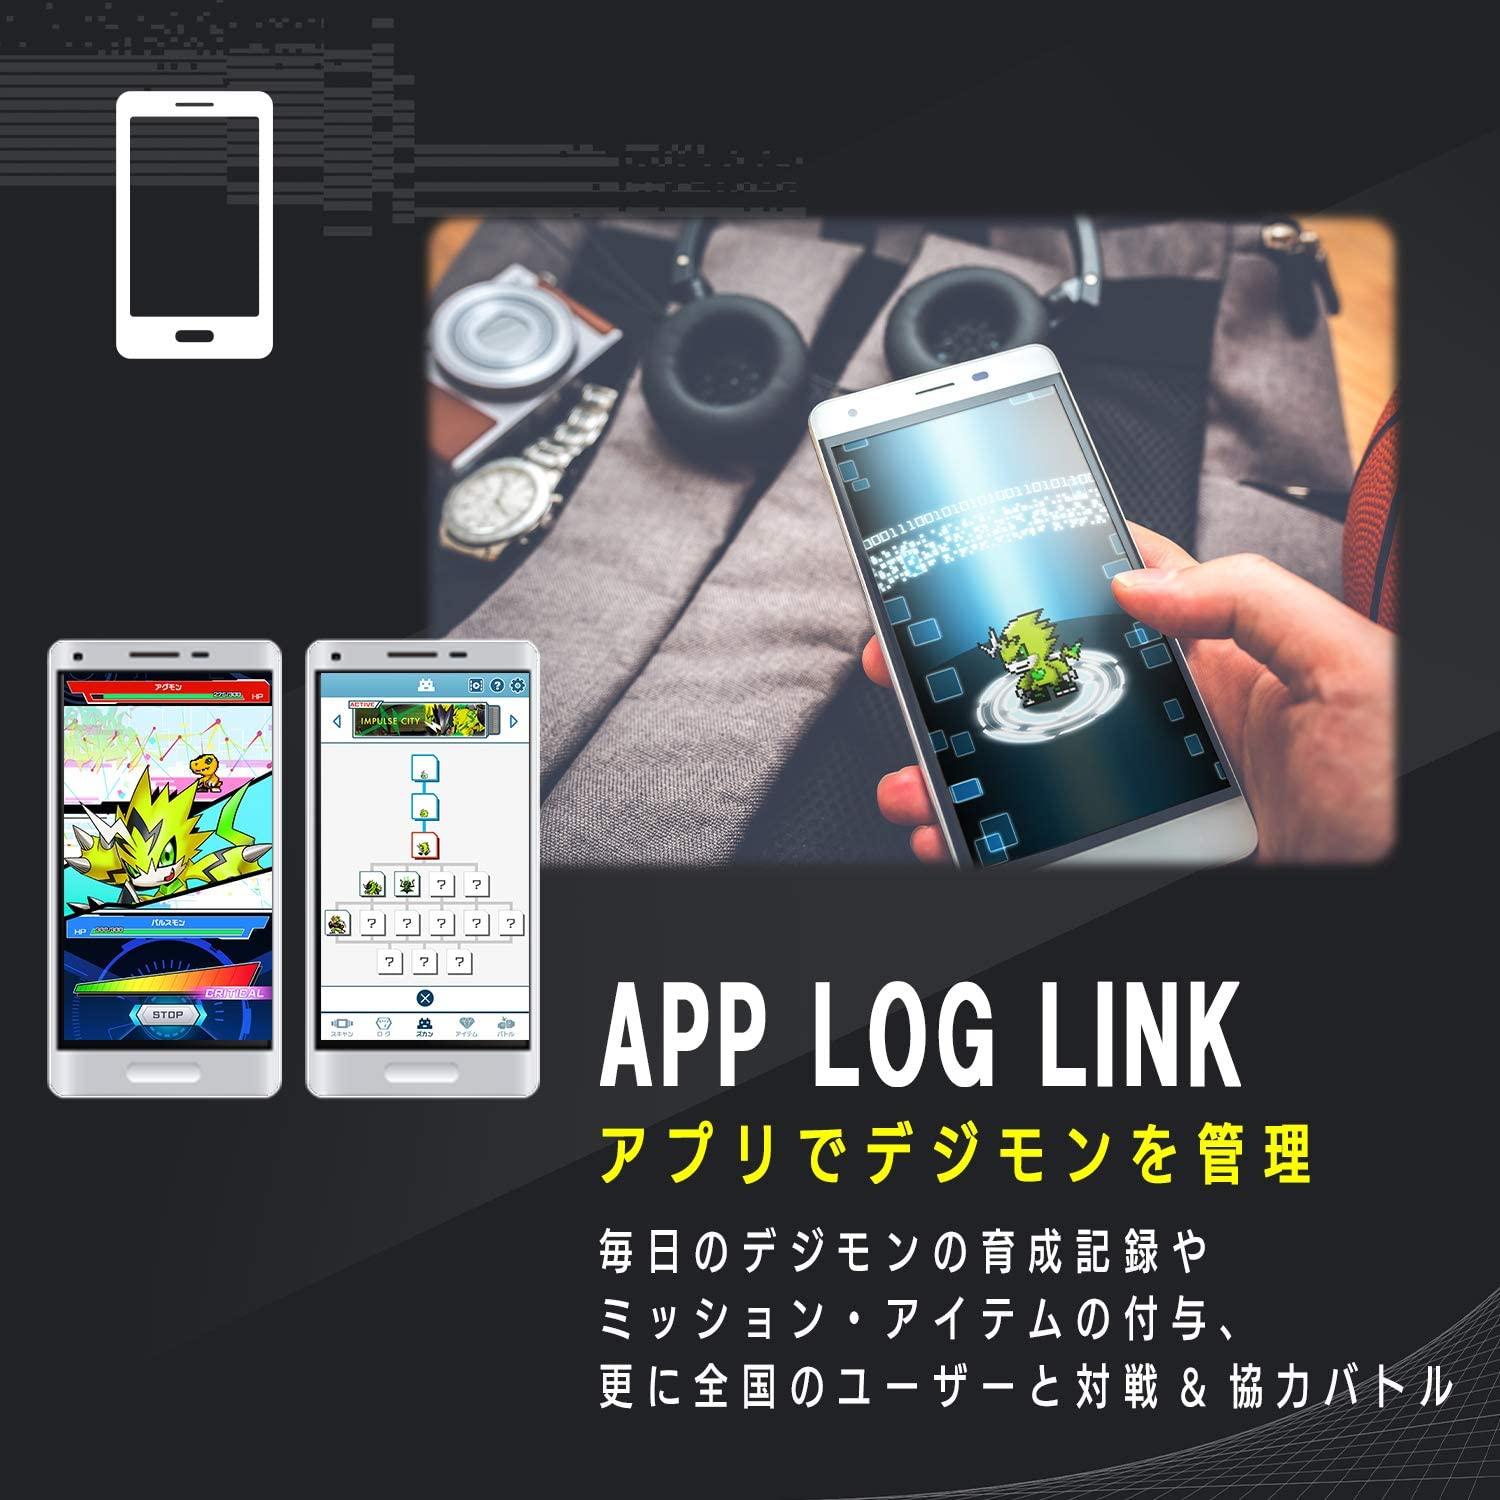 Full English Vital Bracelet App Update is Available : r/digimon